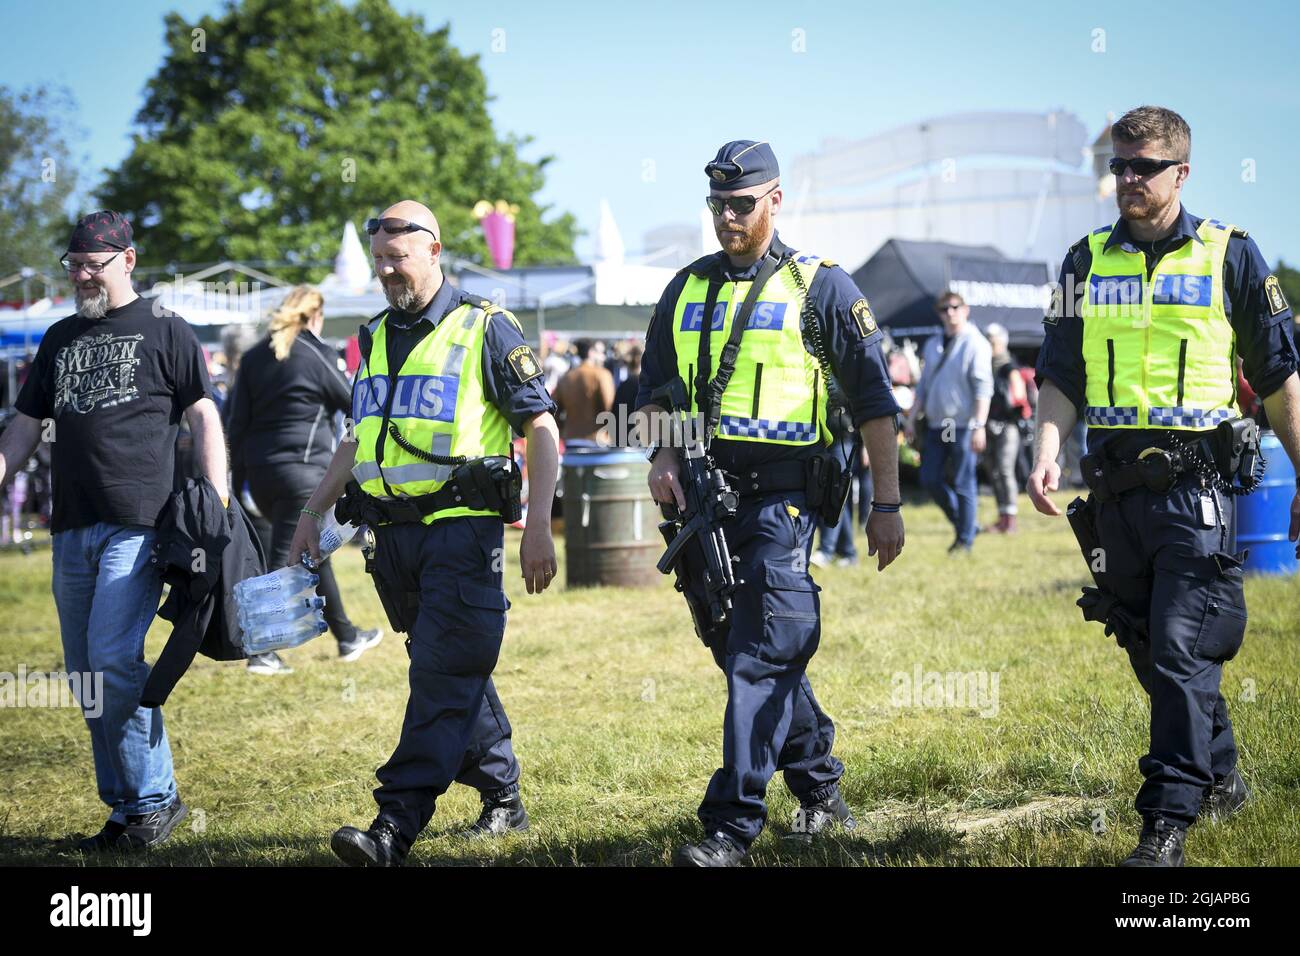 NORJE 20170607 officiers de police armés le premier jour du 'Festival Rock de Suède' à Norje, en Suède, mercredi. En raison des récentes attaques terroristes la sécurité est plus serrée cette année Foto: Fredrik Sandberg / TT / Kod 10080 swedenrock2017 Banque D'Images